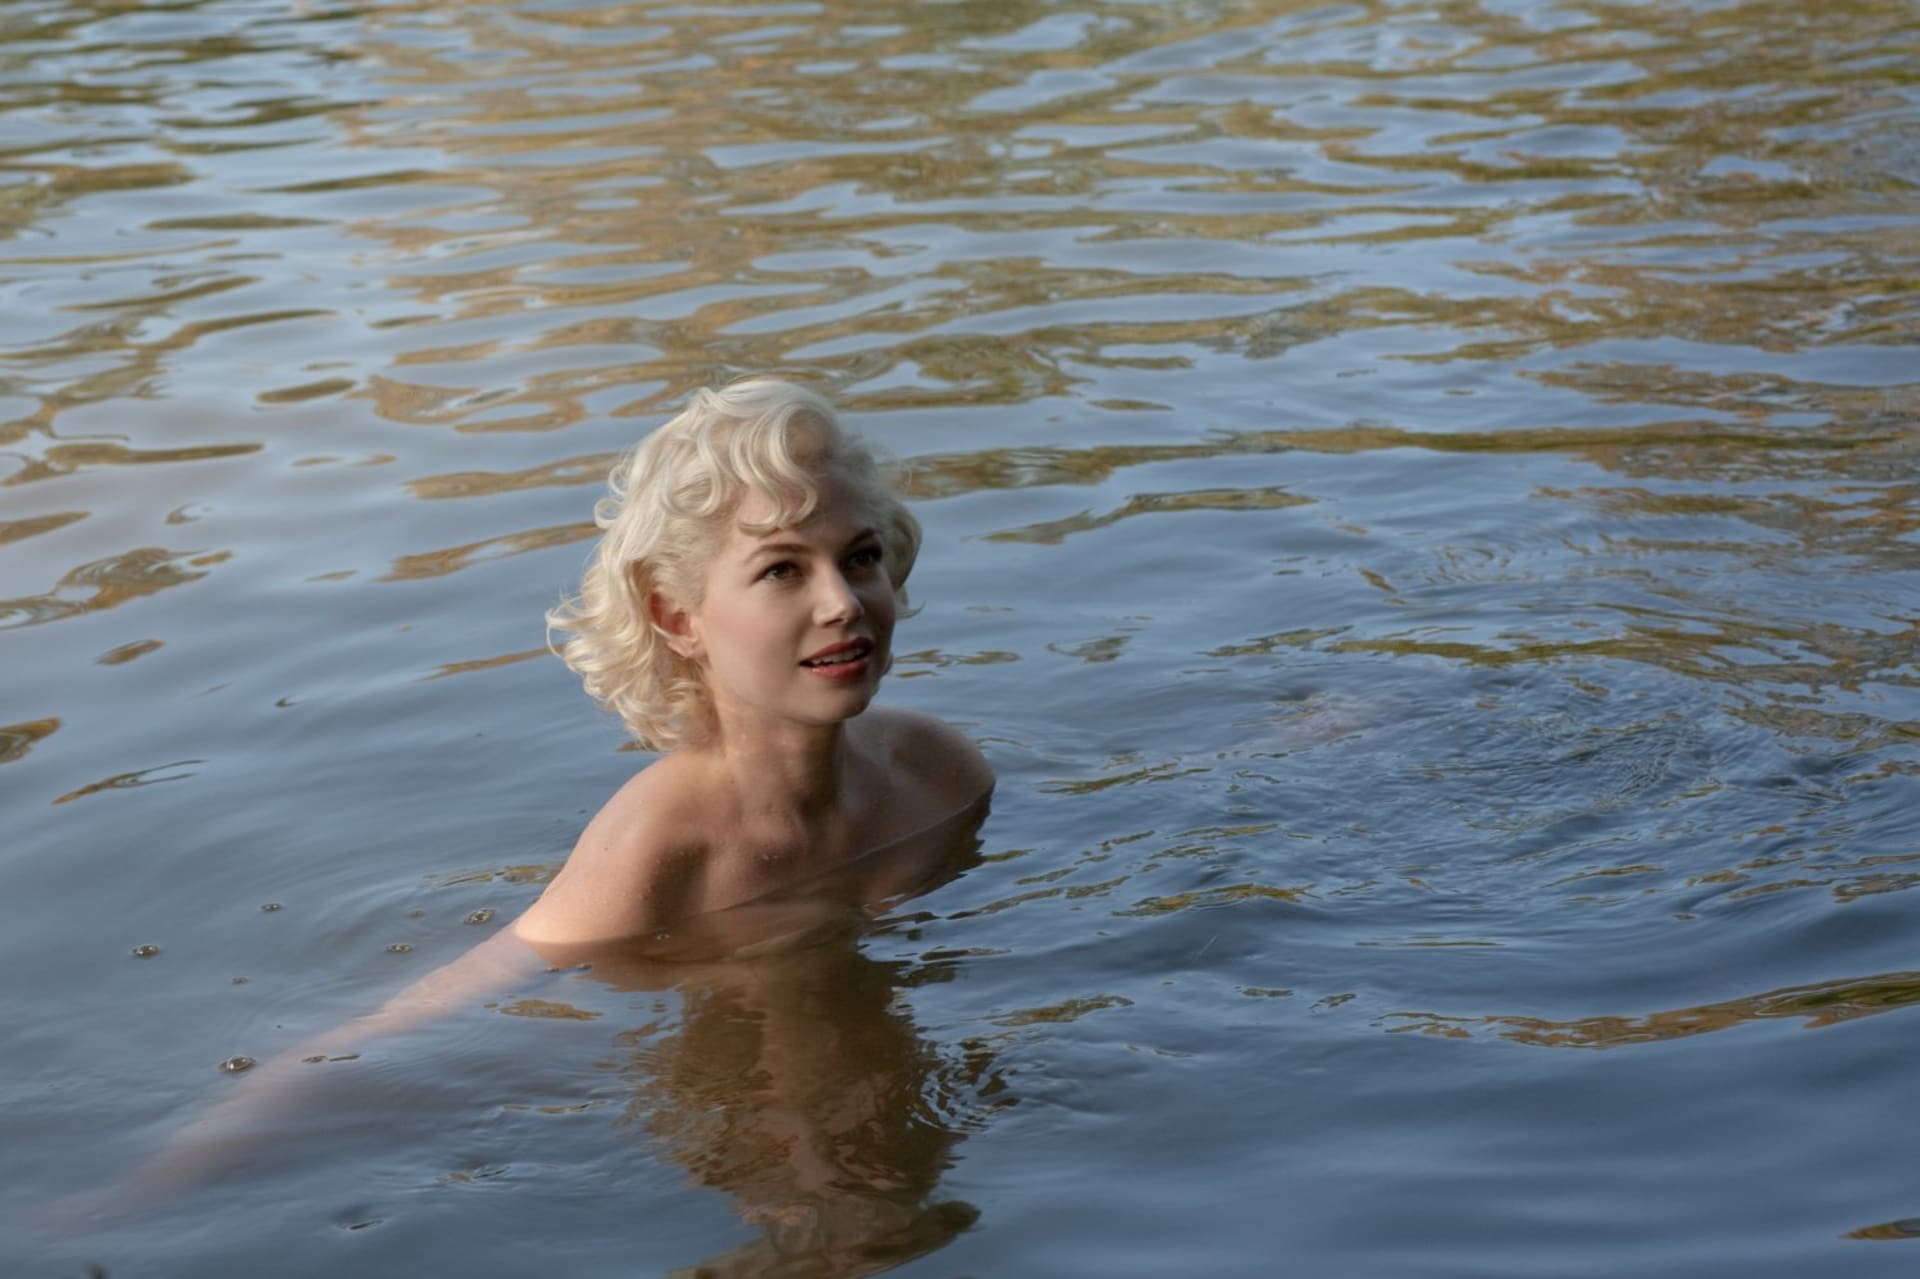 Děj filmu Můj týden s Marilyn zachycuje sedmidenní období při natáčení romantické komedie Princ a tanečnice v roce 1957. 